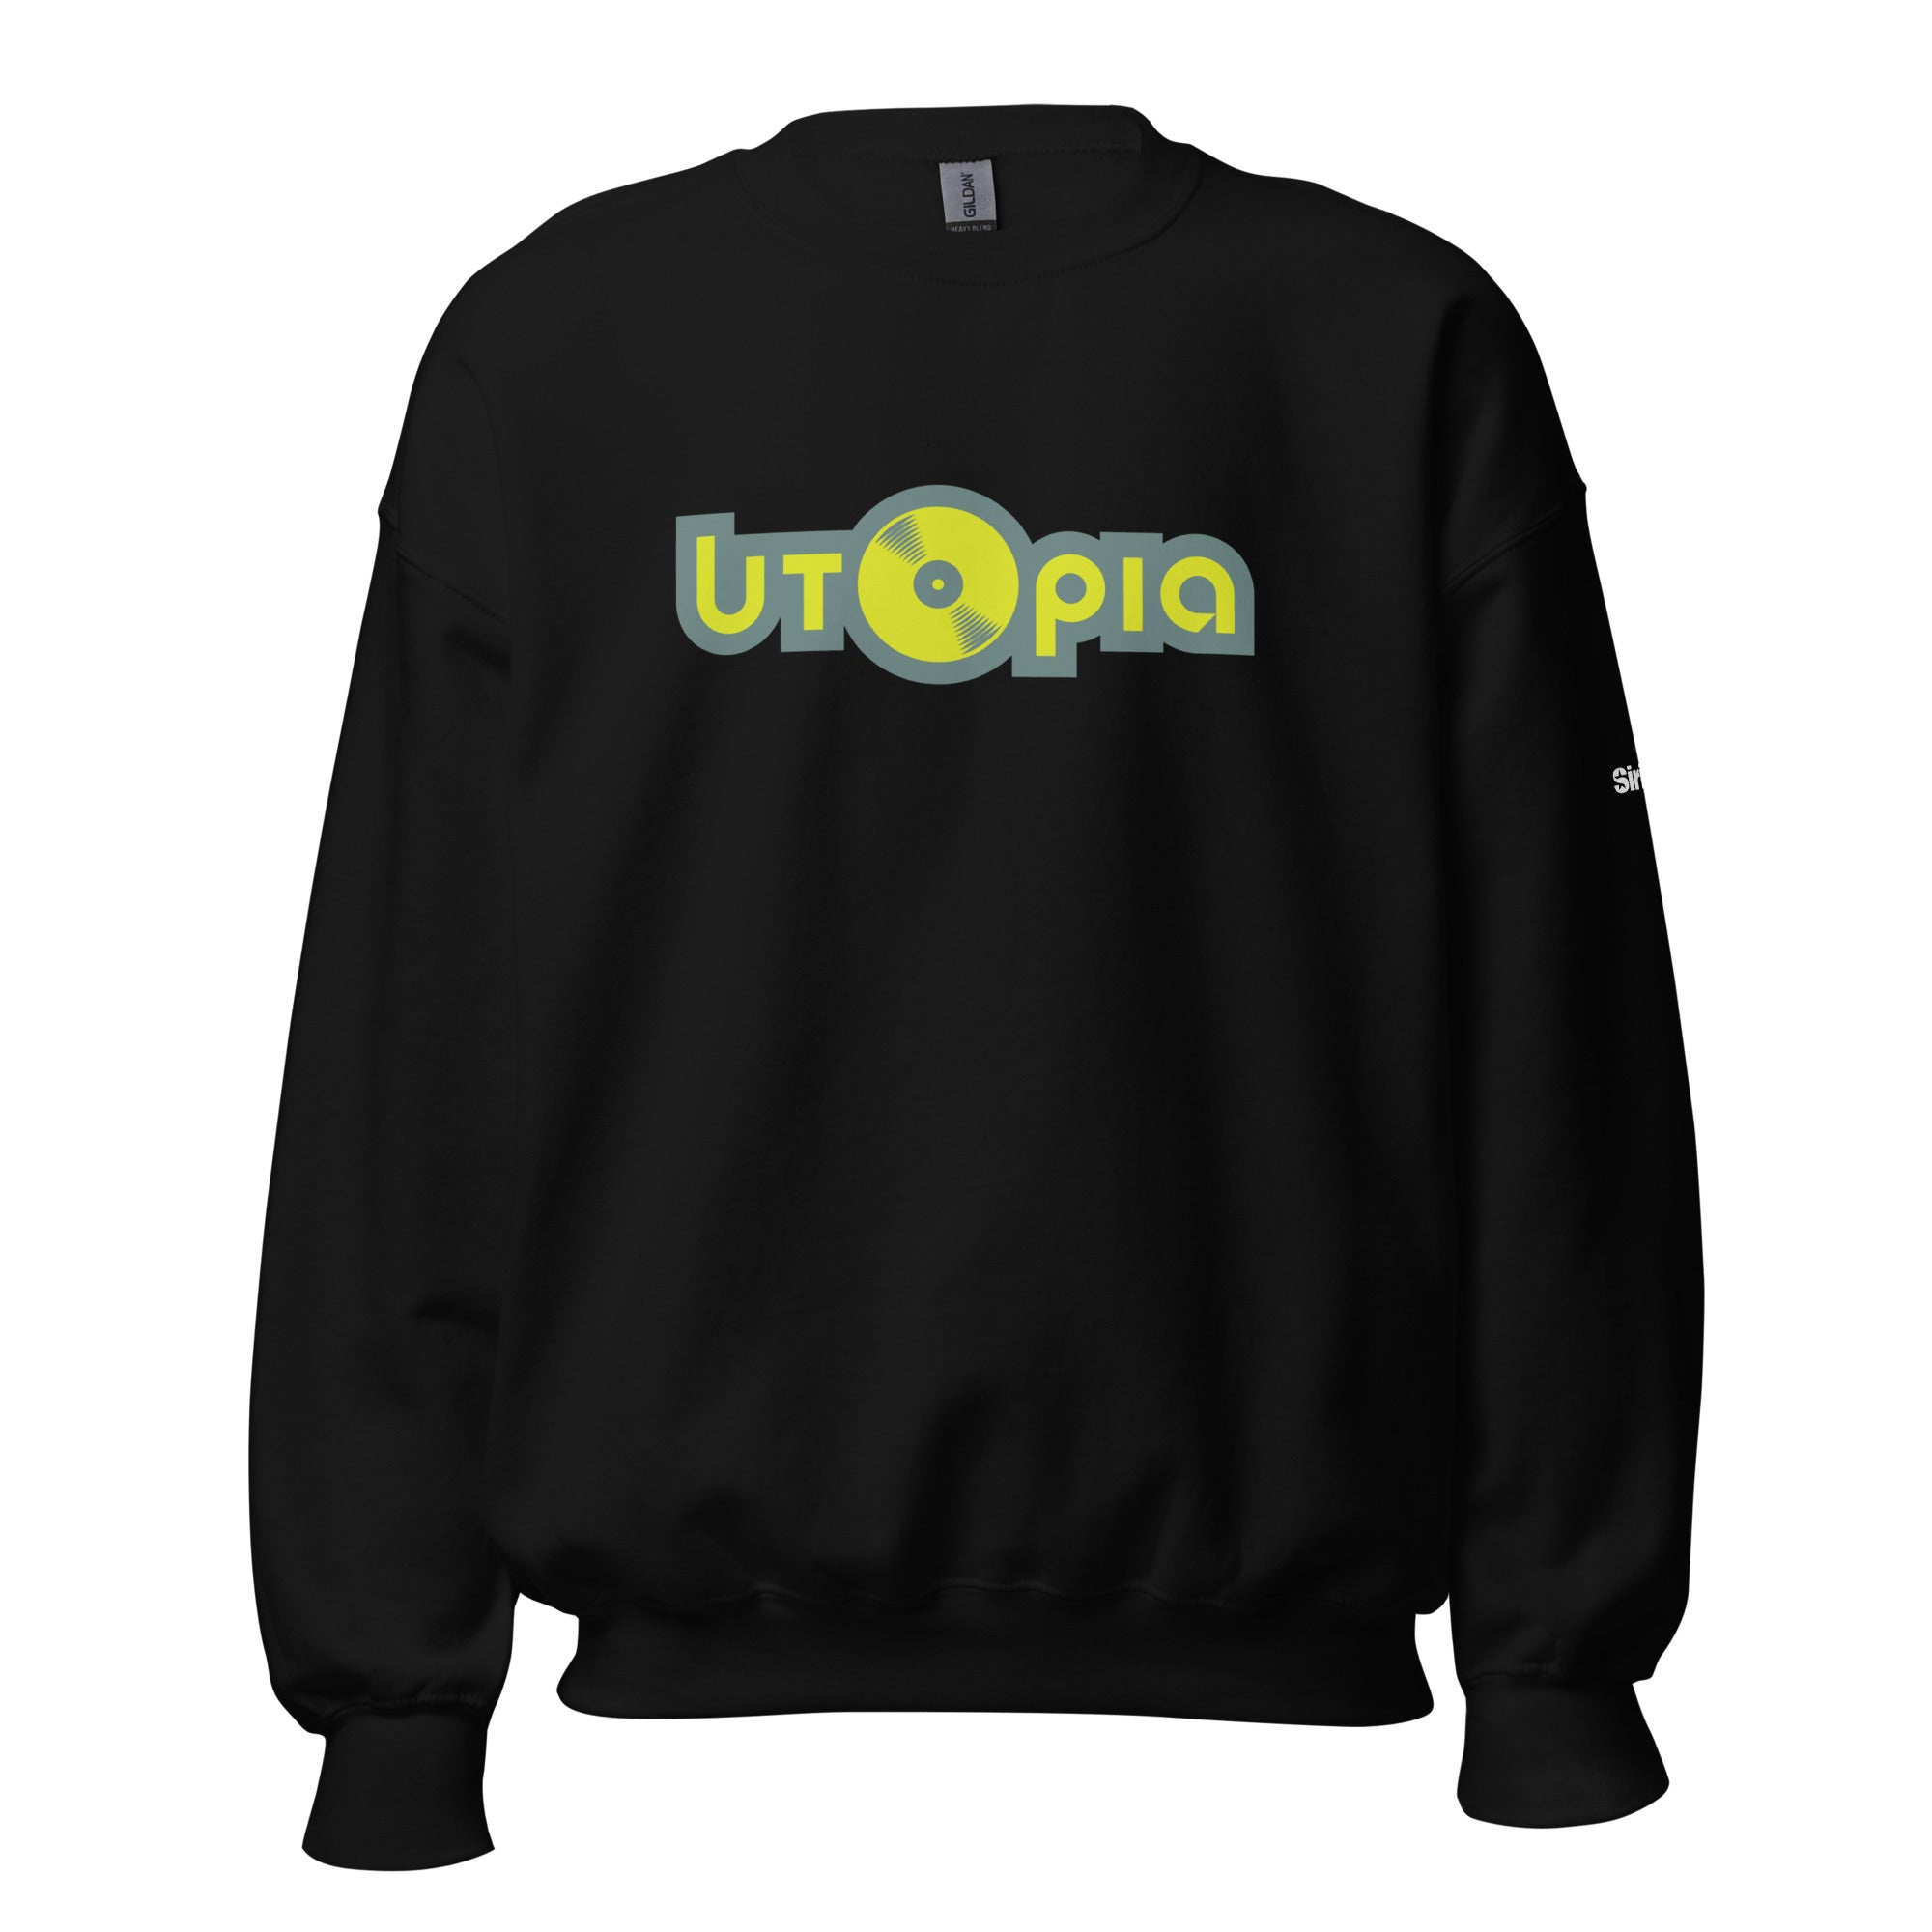 Utopia: Sweatshirt (Black)